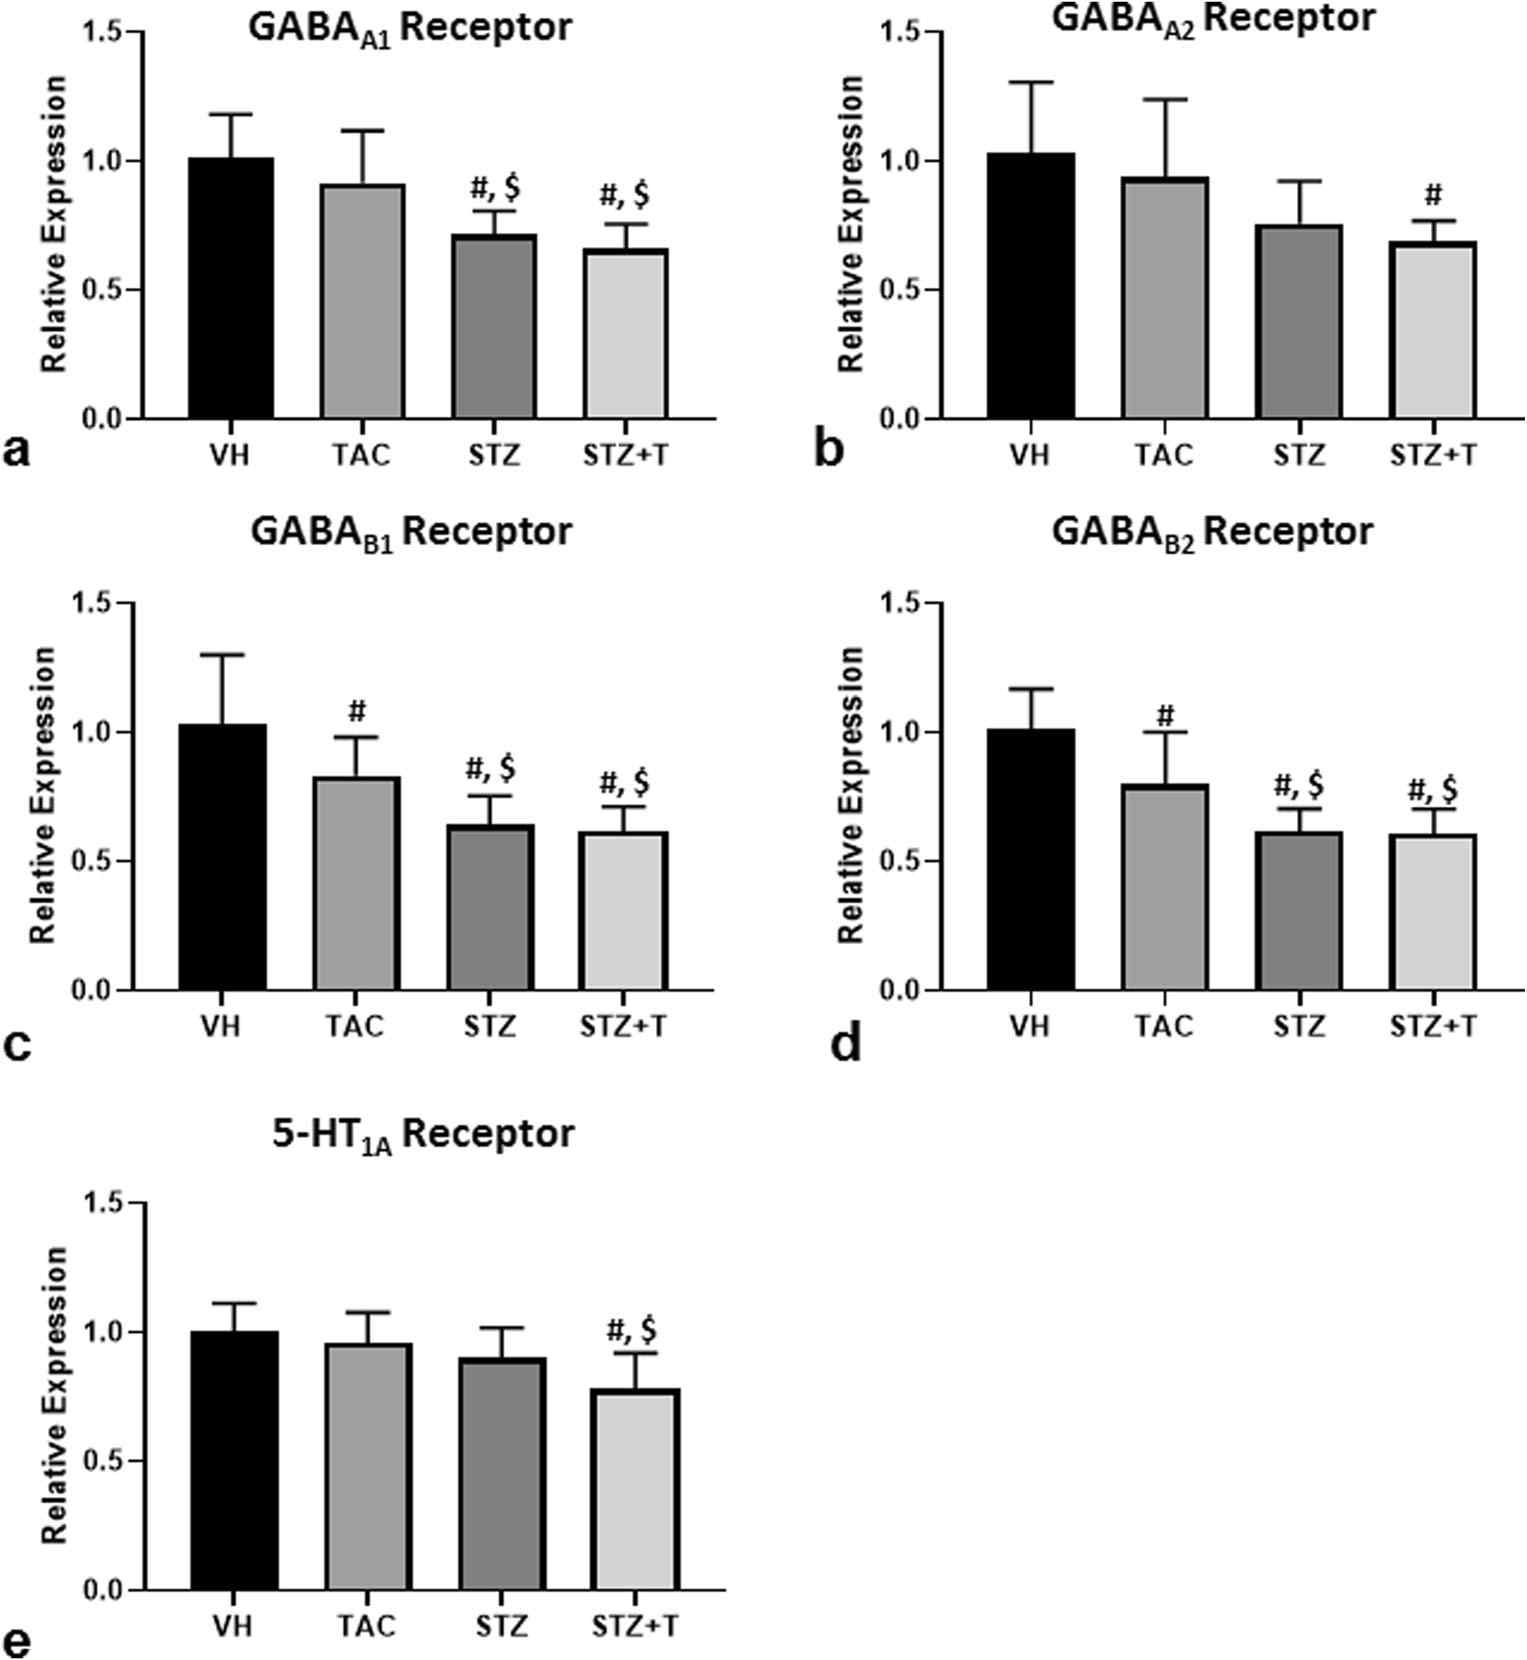 우울증과 관련된 GABA receptor와 5-HT receptor의 발현 변화 - 당뇨군과 STZ+T군에서 각 receptor의 발현 감소를 확인